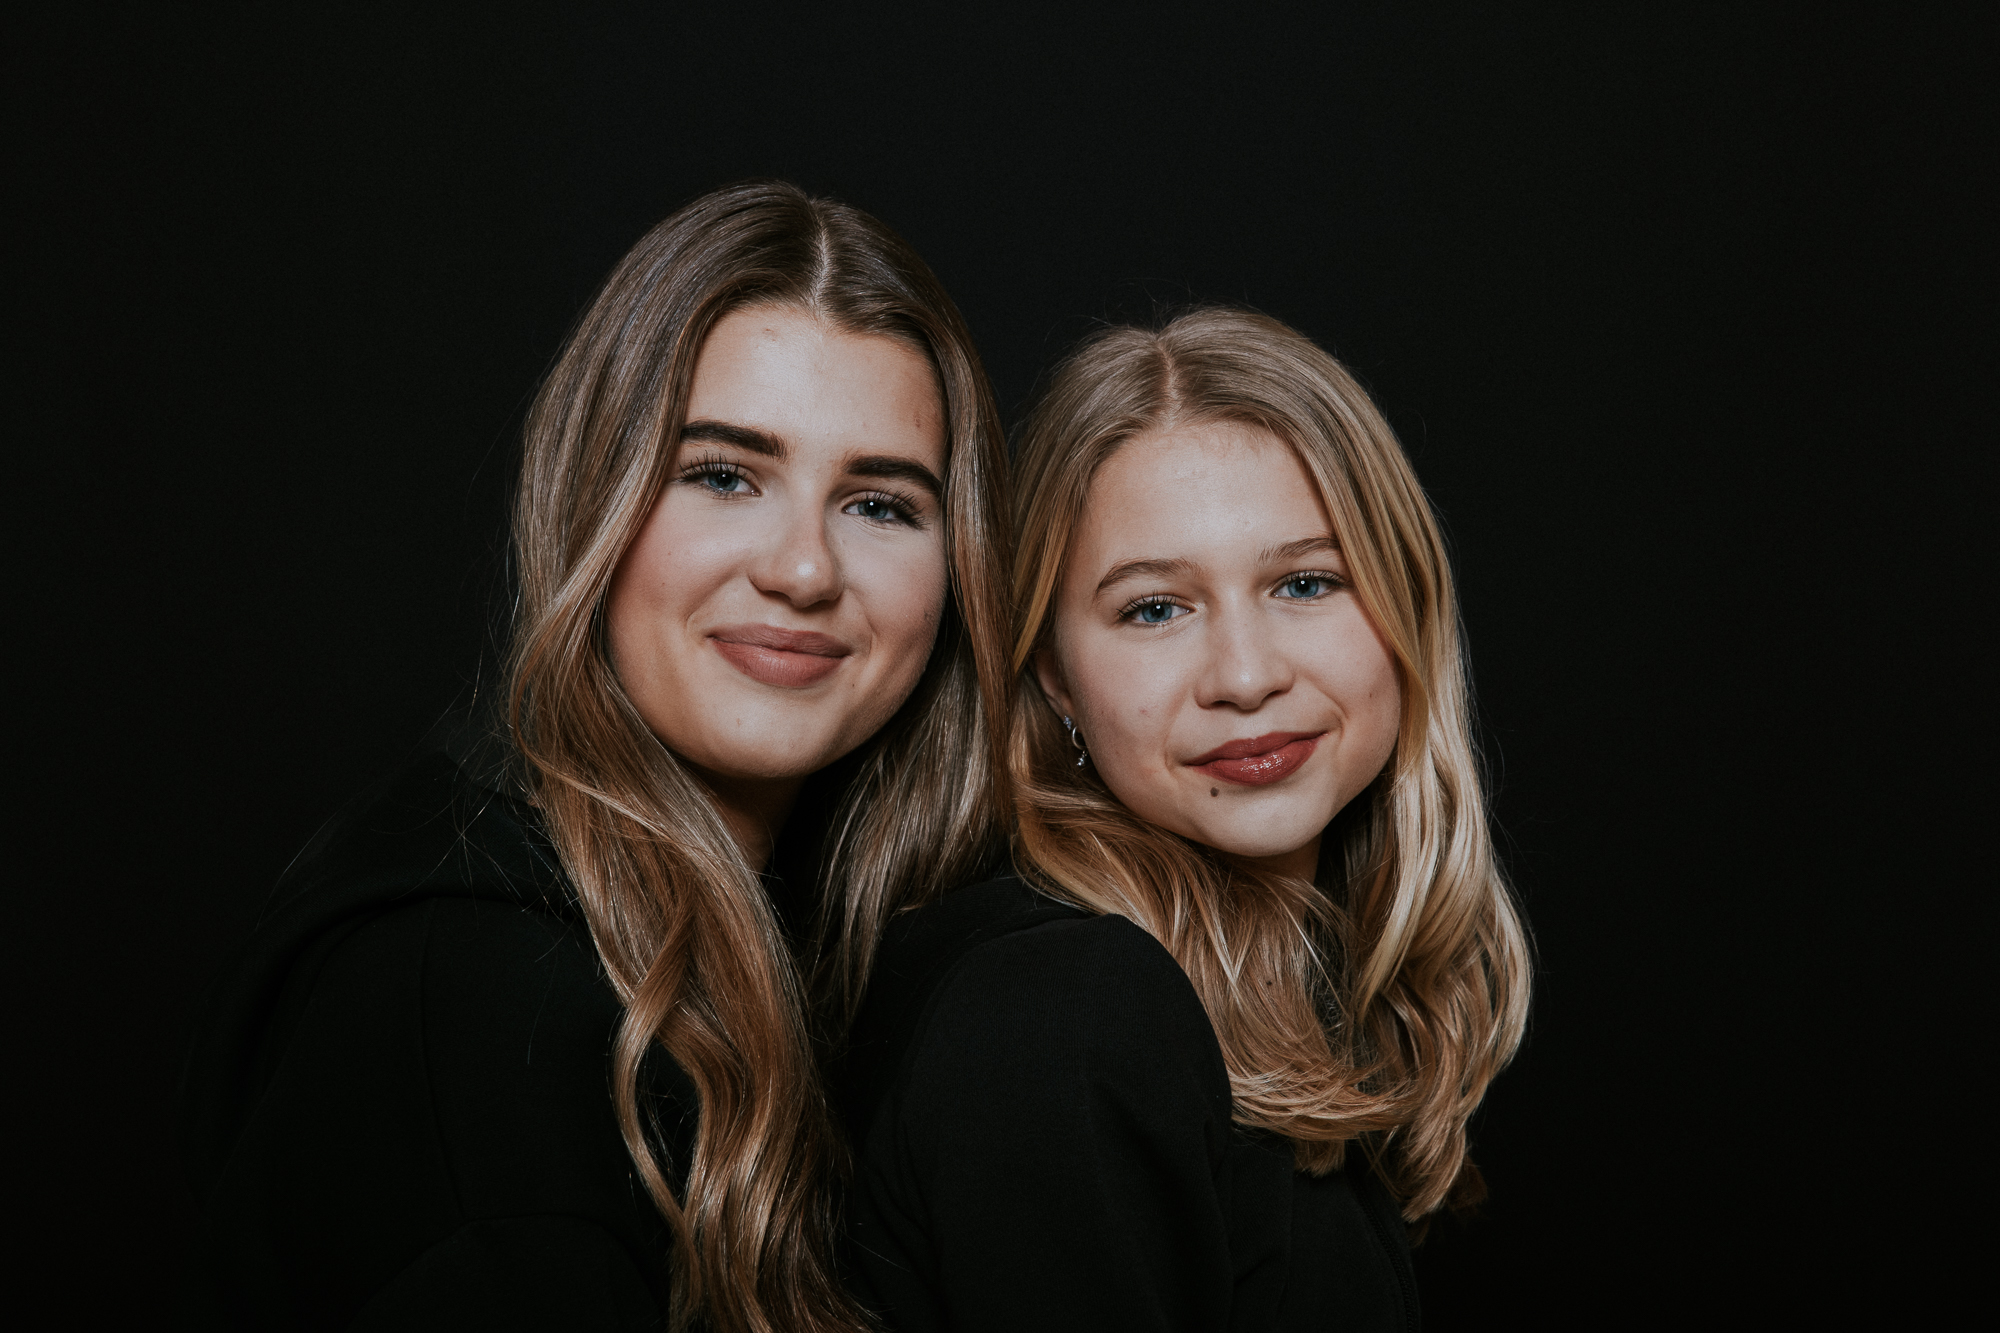 Studioportret van twee zusjes door fotograaf Nickie Fotografie.